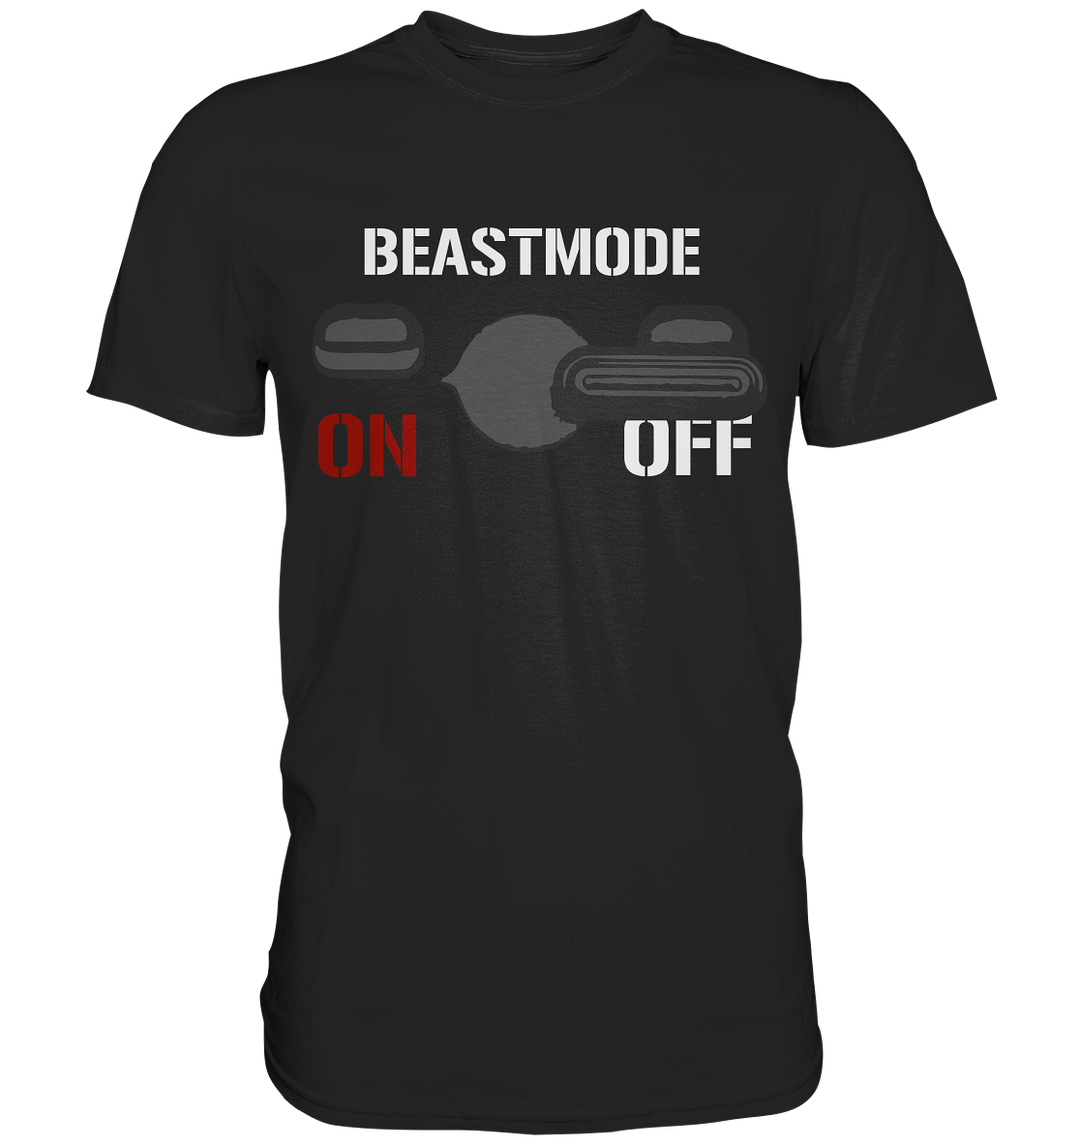 Beastmode - Premium Shirt